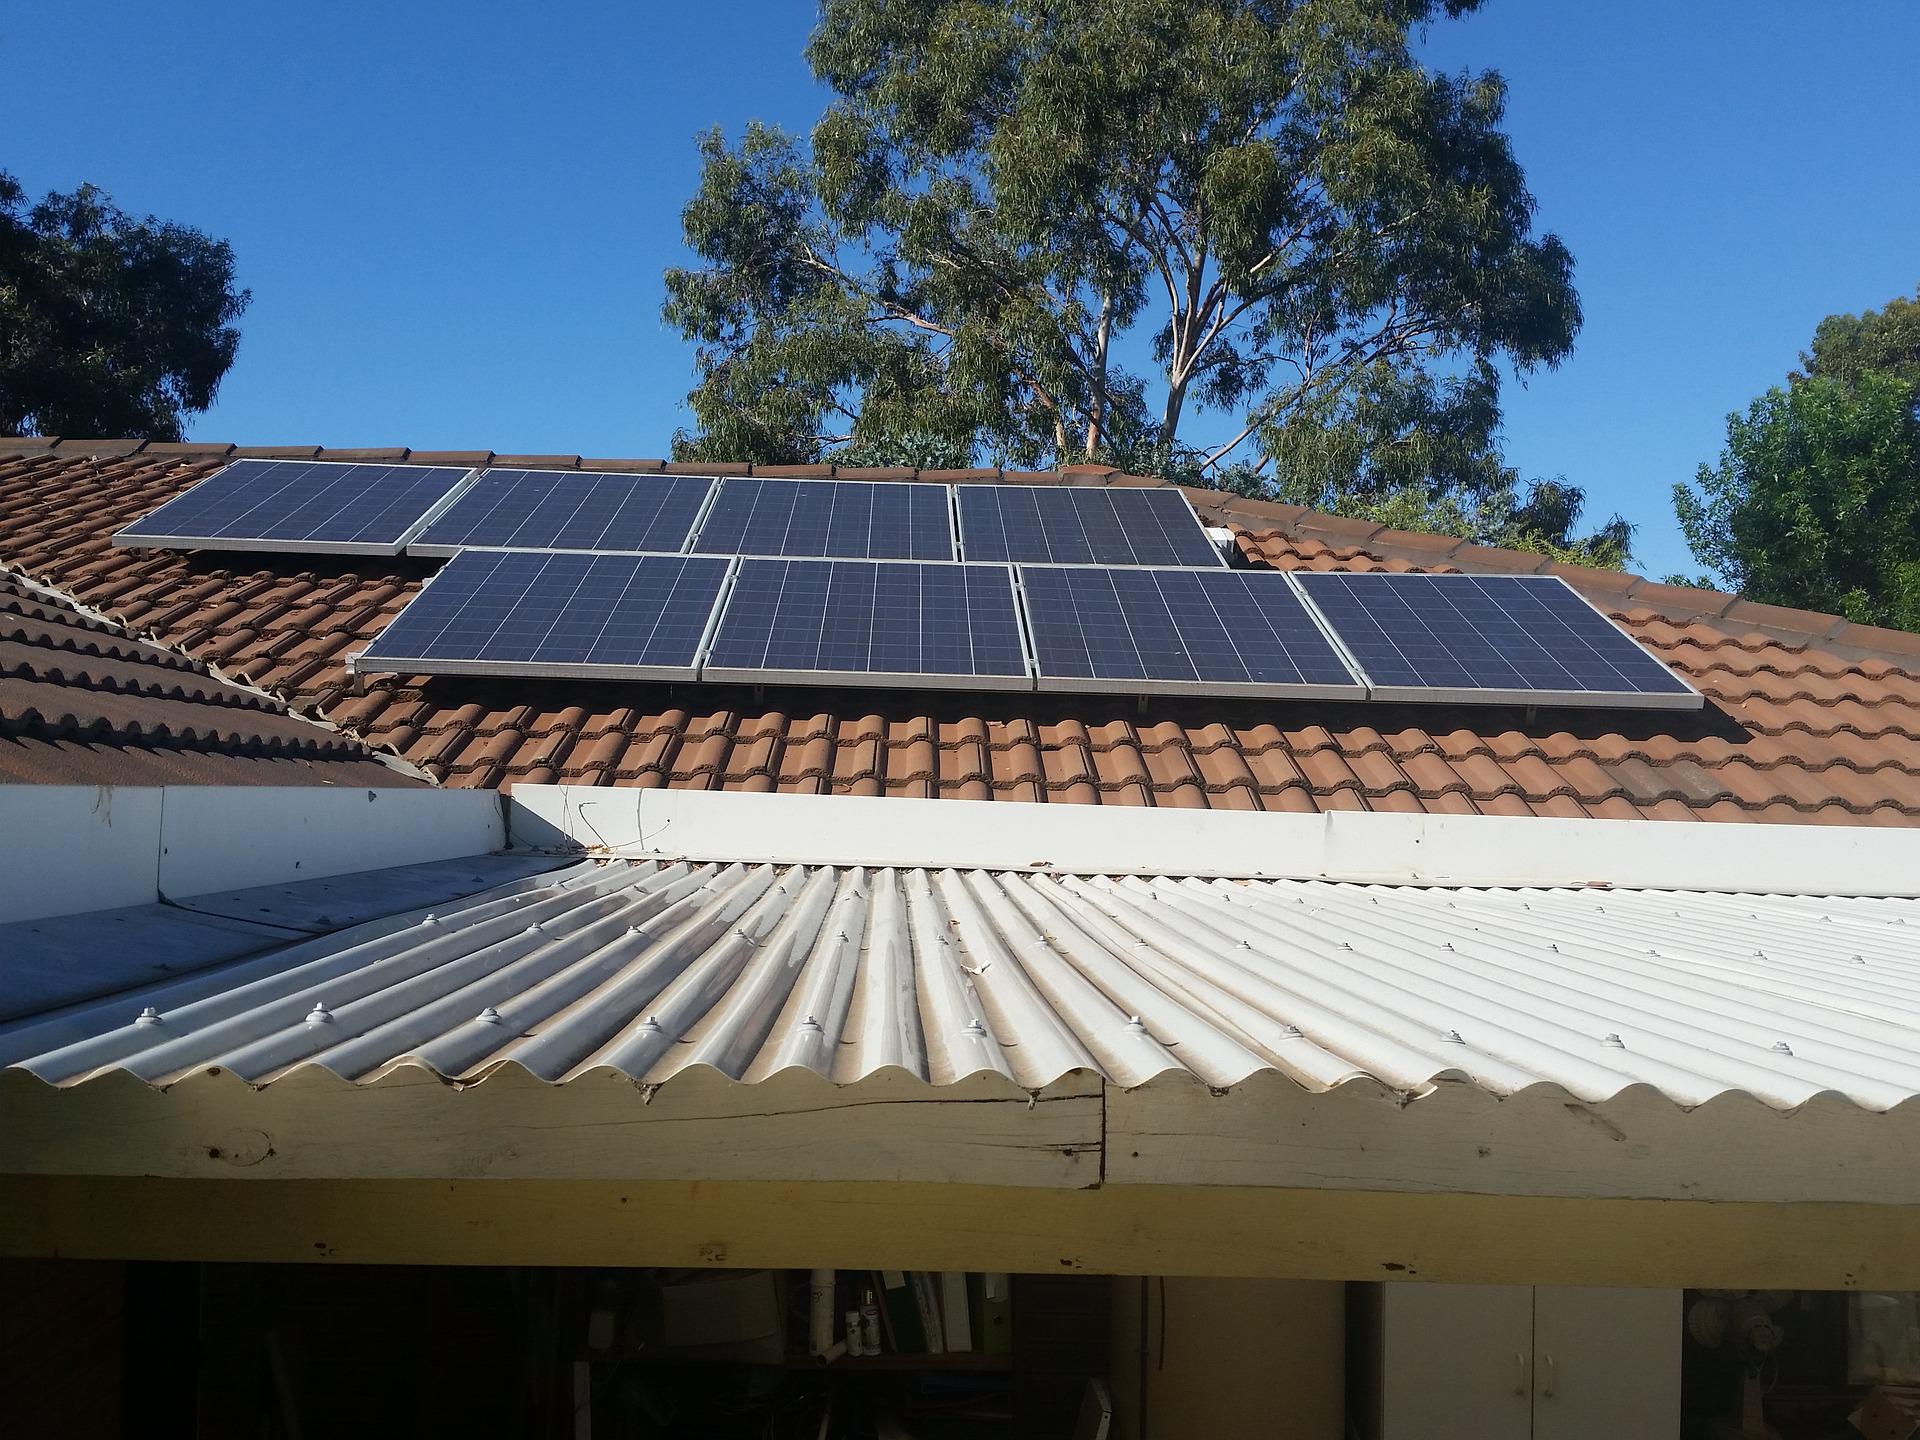 Dachflächen für Solaranlagen findet man überall